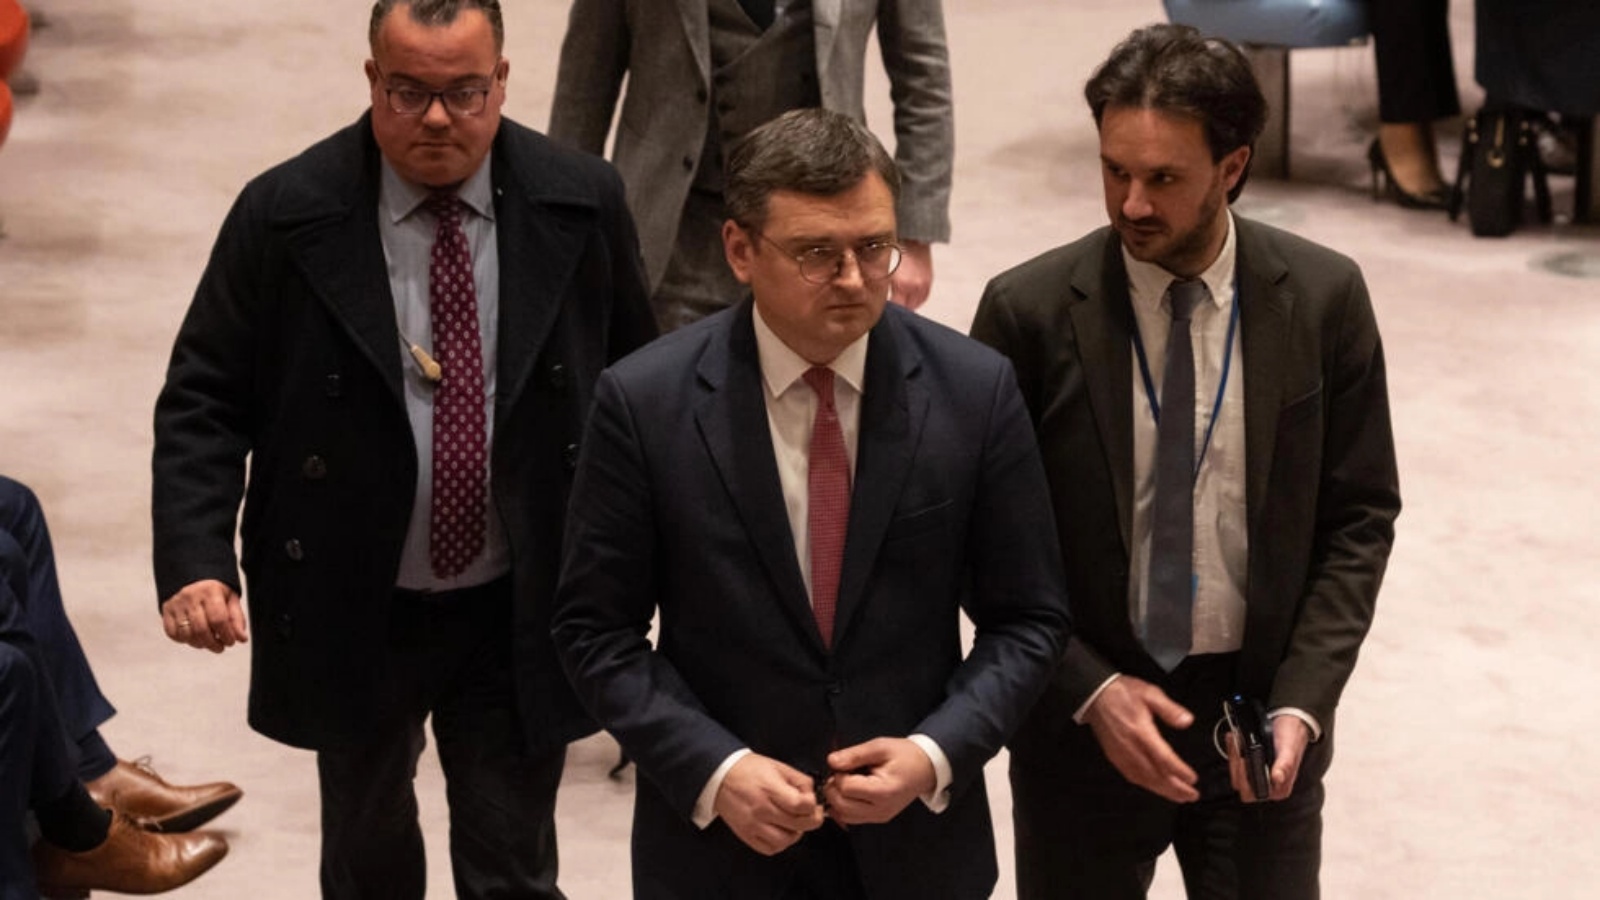 وزير الخارجية الأوكراني دميترو كوليبا يغادر اجتماع مجلس الأمن التابع للأمم المتحدة بشأن الحفاظ على السلام والأمن في أوكرانيا في مقر الأمم المتحدة في مدينة نيويورك في 24 فبراير 2023 